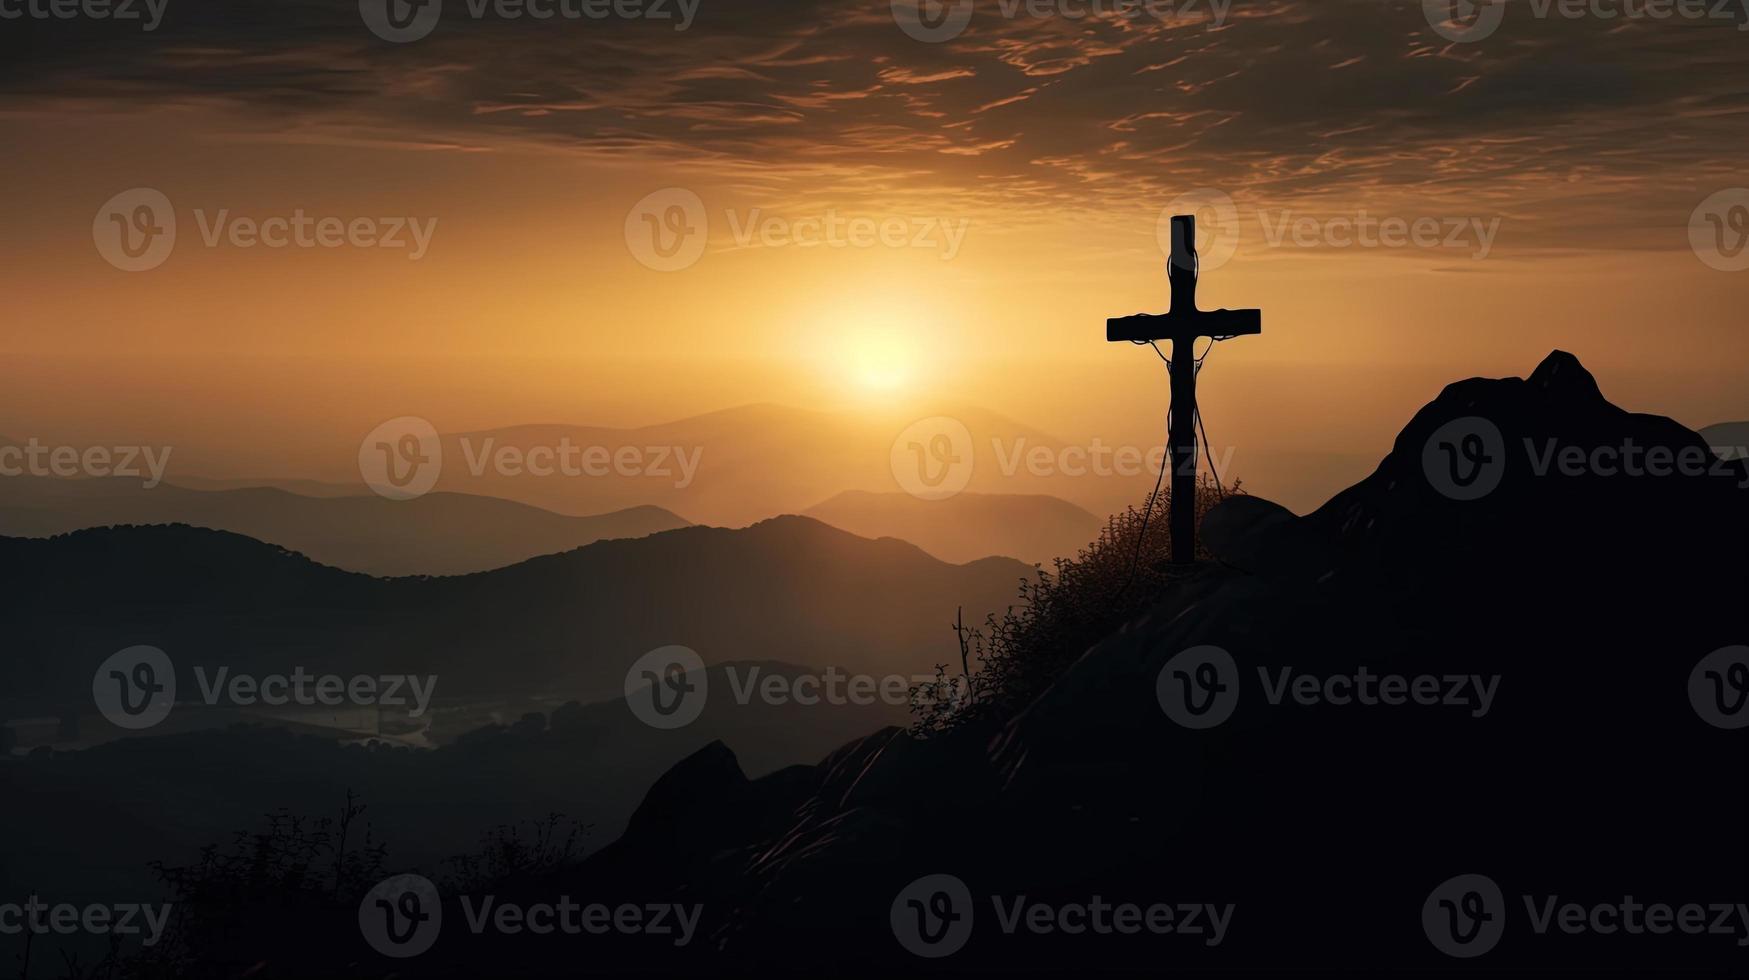 montaña majestad artístico silueta de crucifijo cruzar en contra puesta de sol cielo foto